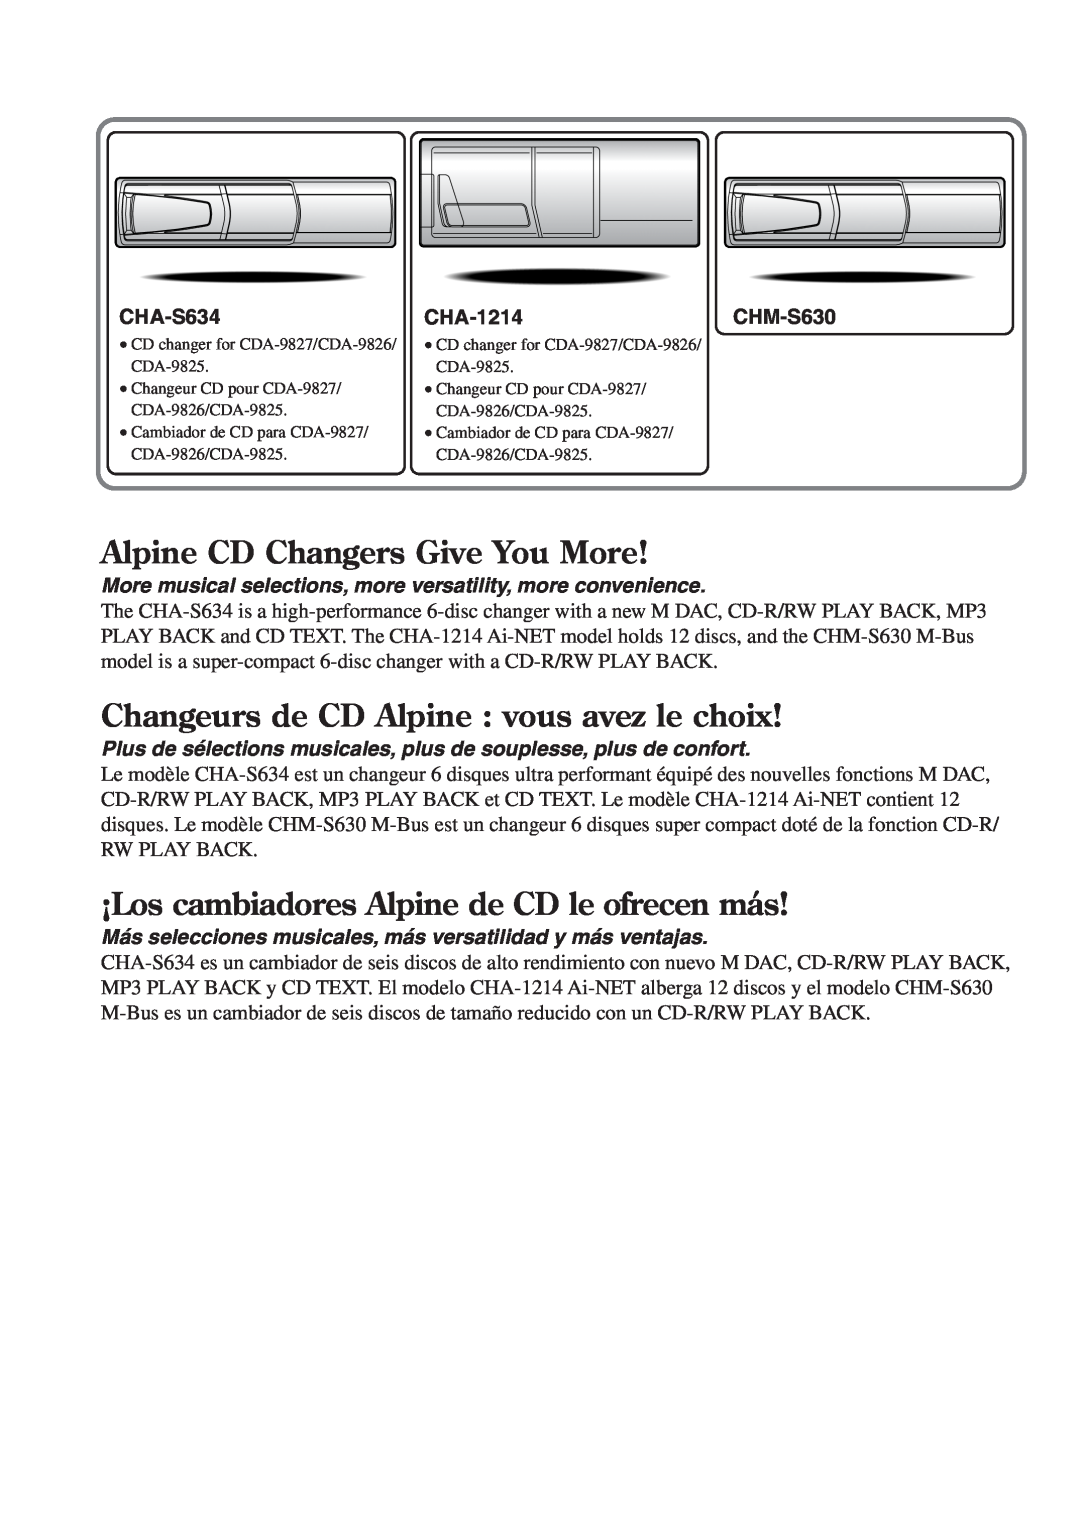 Alpine cda-9825 Alpine CD Changers Give You More, Changeurs de CD Alpine vous avez le choix, CHA-S634, CHA-1214, CHM-S630 